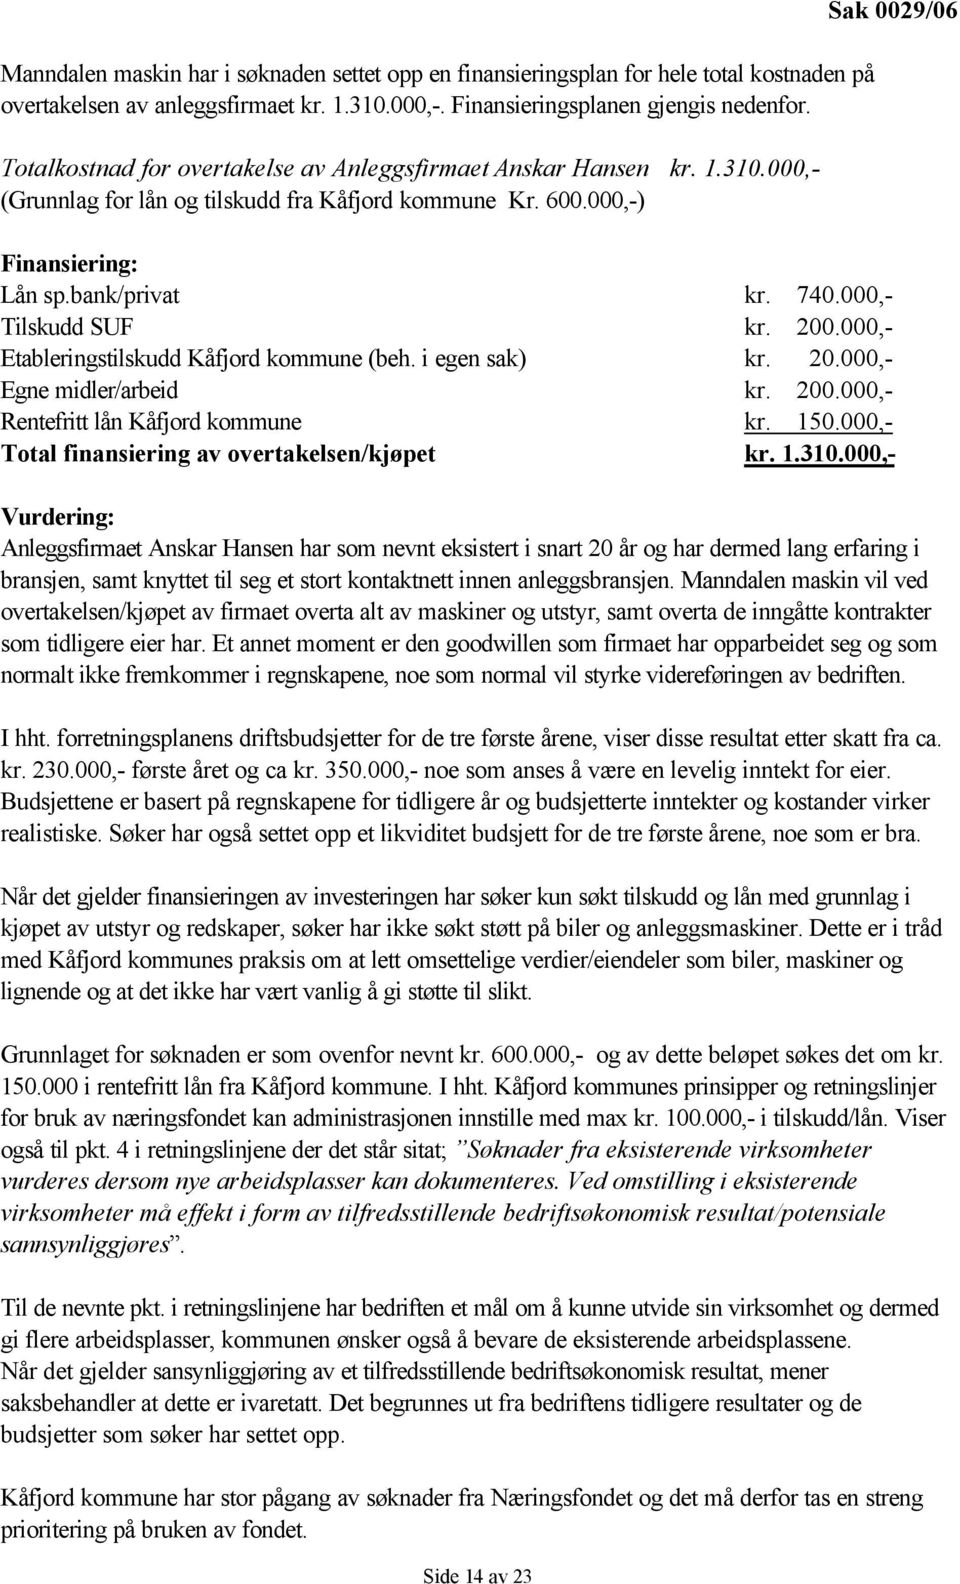 bank/privat kr. 740.000,- Tilskudd SUF kr. 200.000,- Etableringstilskudd Kåfjord kommune (beh. i egen sak) kr. 20.000,- Egne midler/arbeid kr. 200.000,- Rentefritt lån Kåfjord kommune kr. 150.